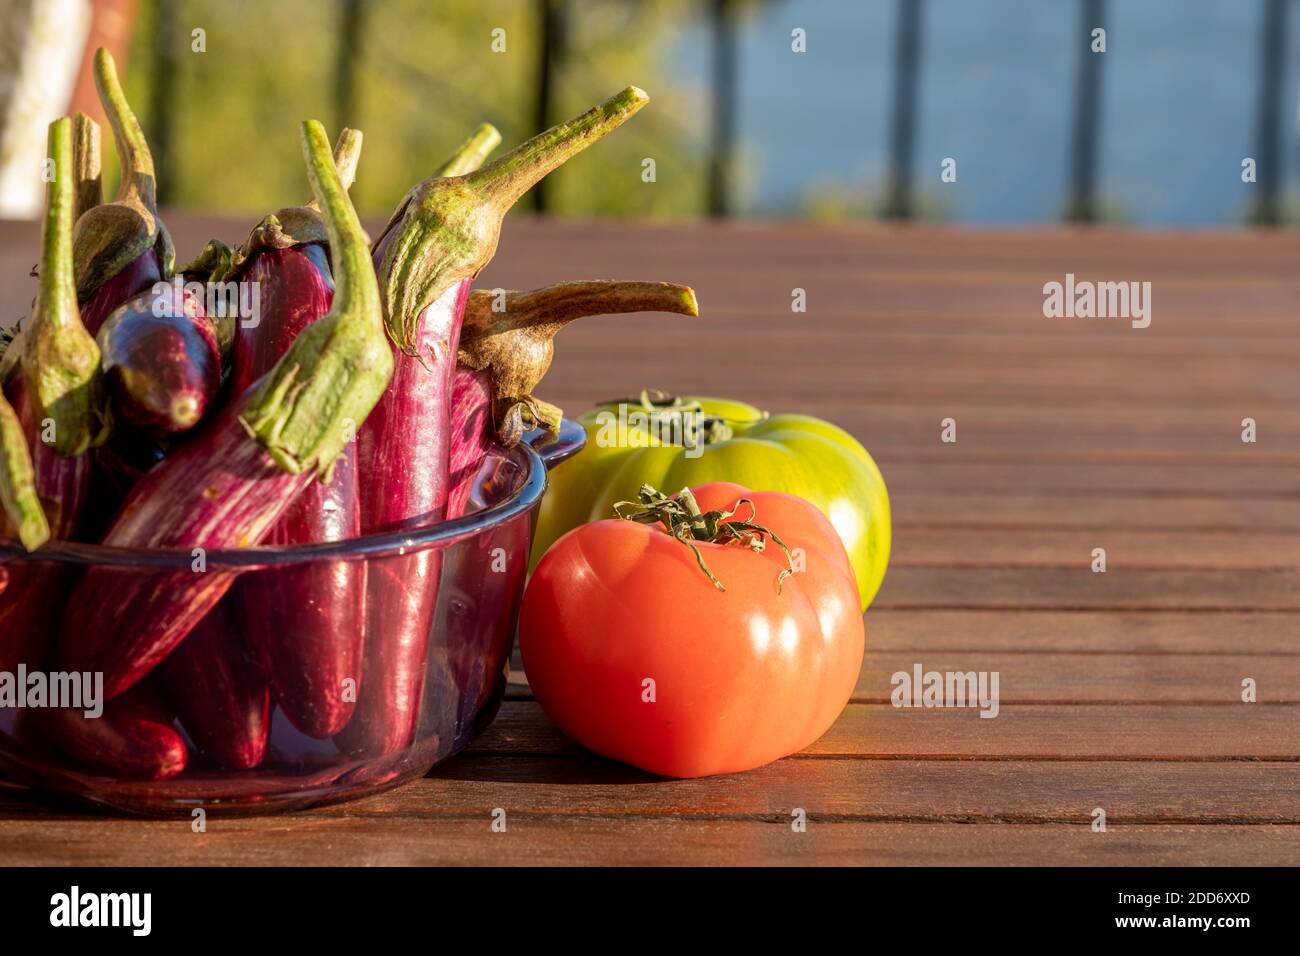 Konzentrieren Sie sich auf das Sonnenlicht, das auf eine rote Tomate reflektiert. Auf dem hölzernen Tisch eine Gruppe von kleinen Auberginen im Glas und eine andere grüne Frucht. Hintergrund für das Essen Stockfoto